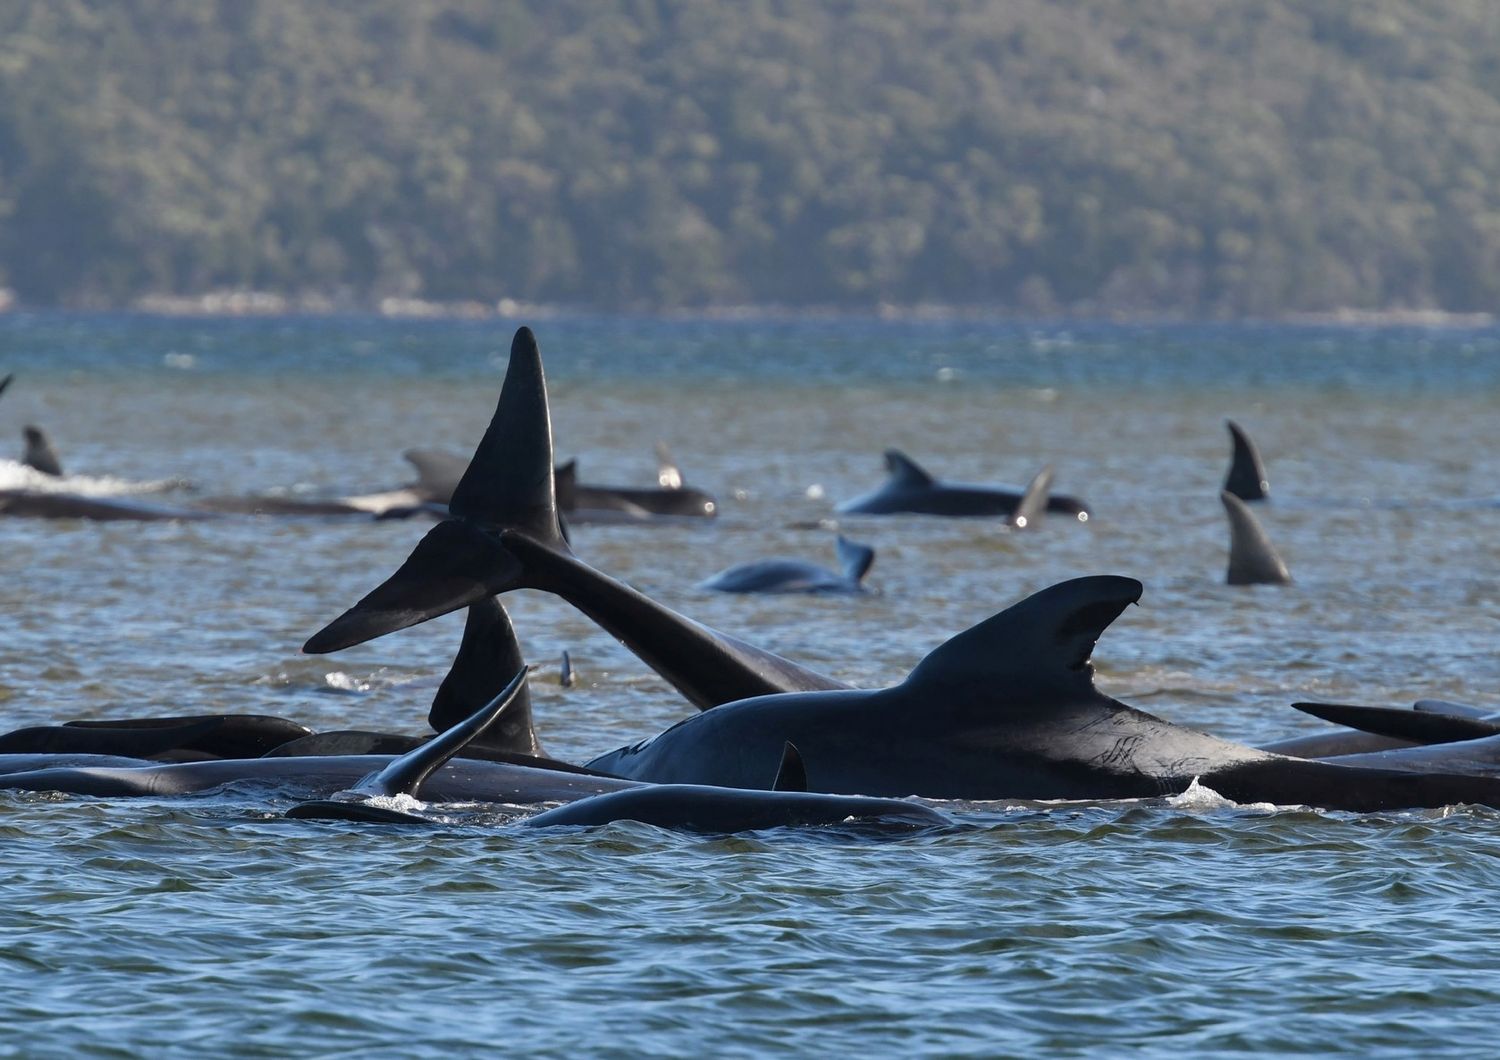 Balene spiaggiate a Macquarie, Australia